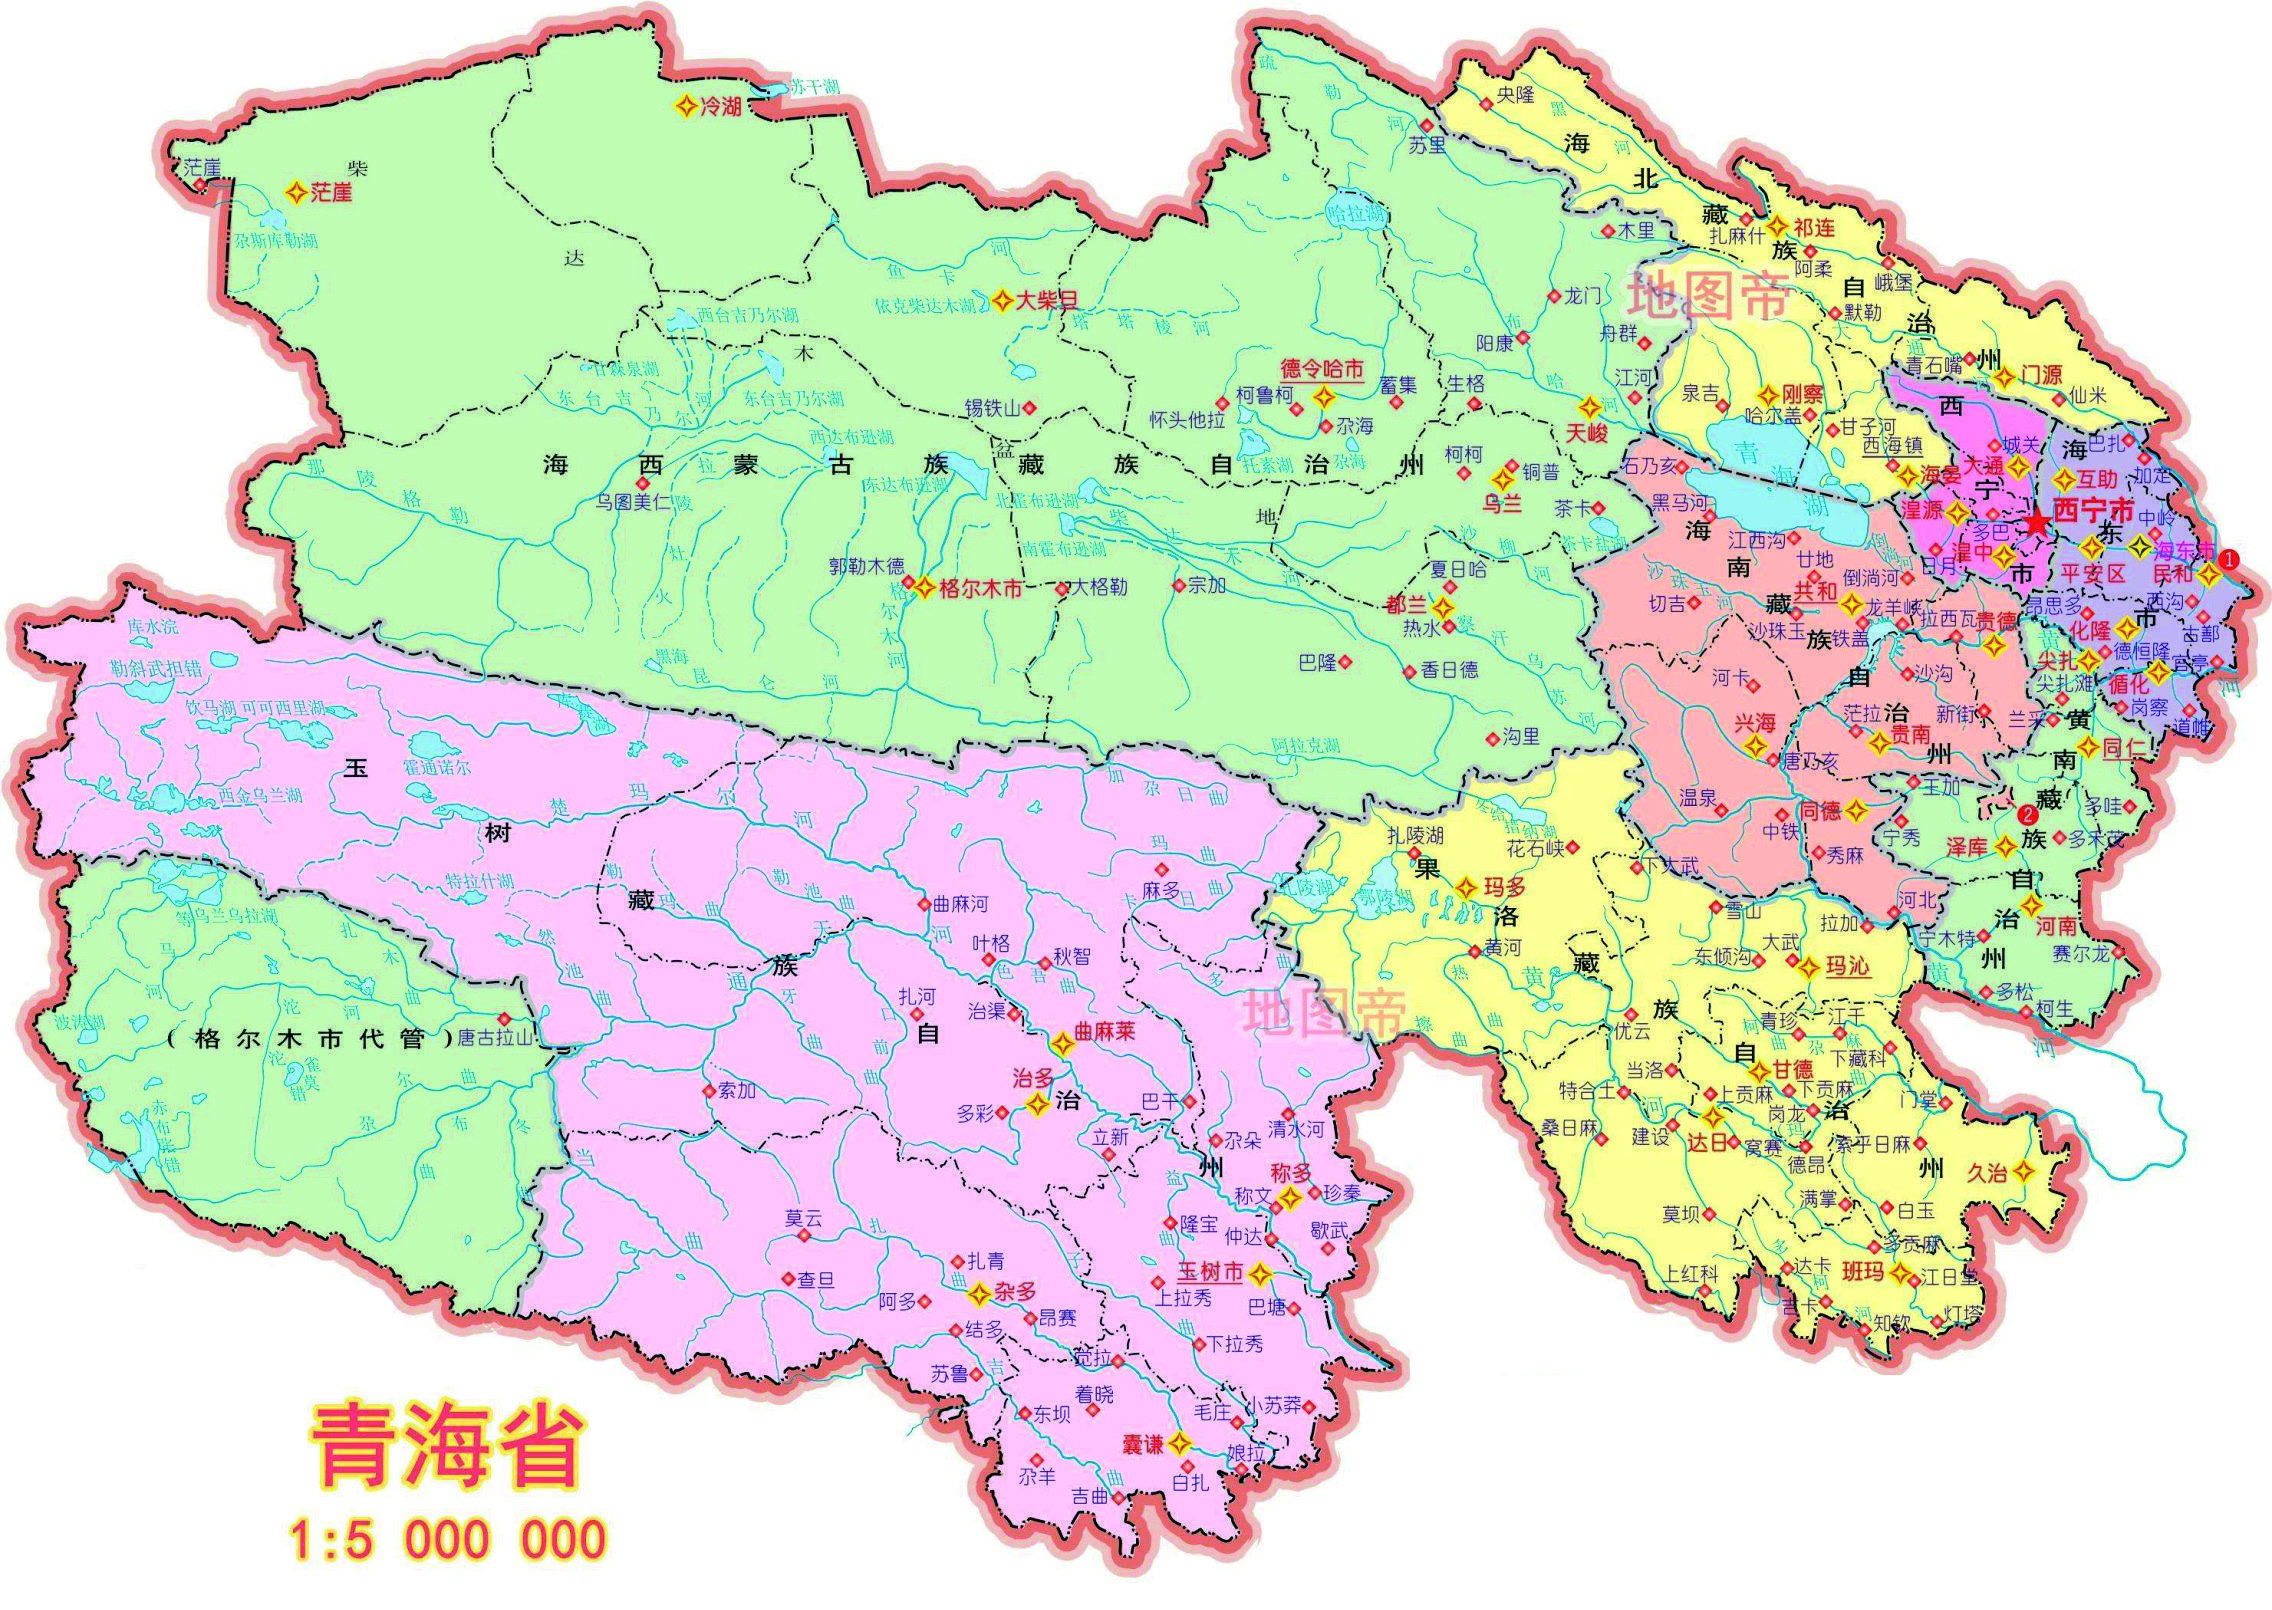 1,青海省:因为我国最大的湖泊是青海湖,此外长江和黄河都从青海发源并